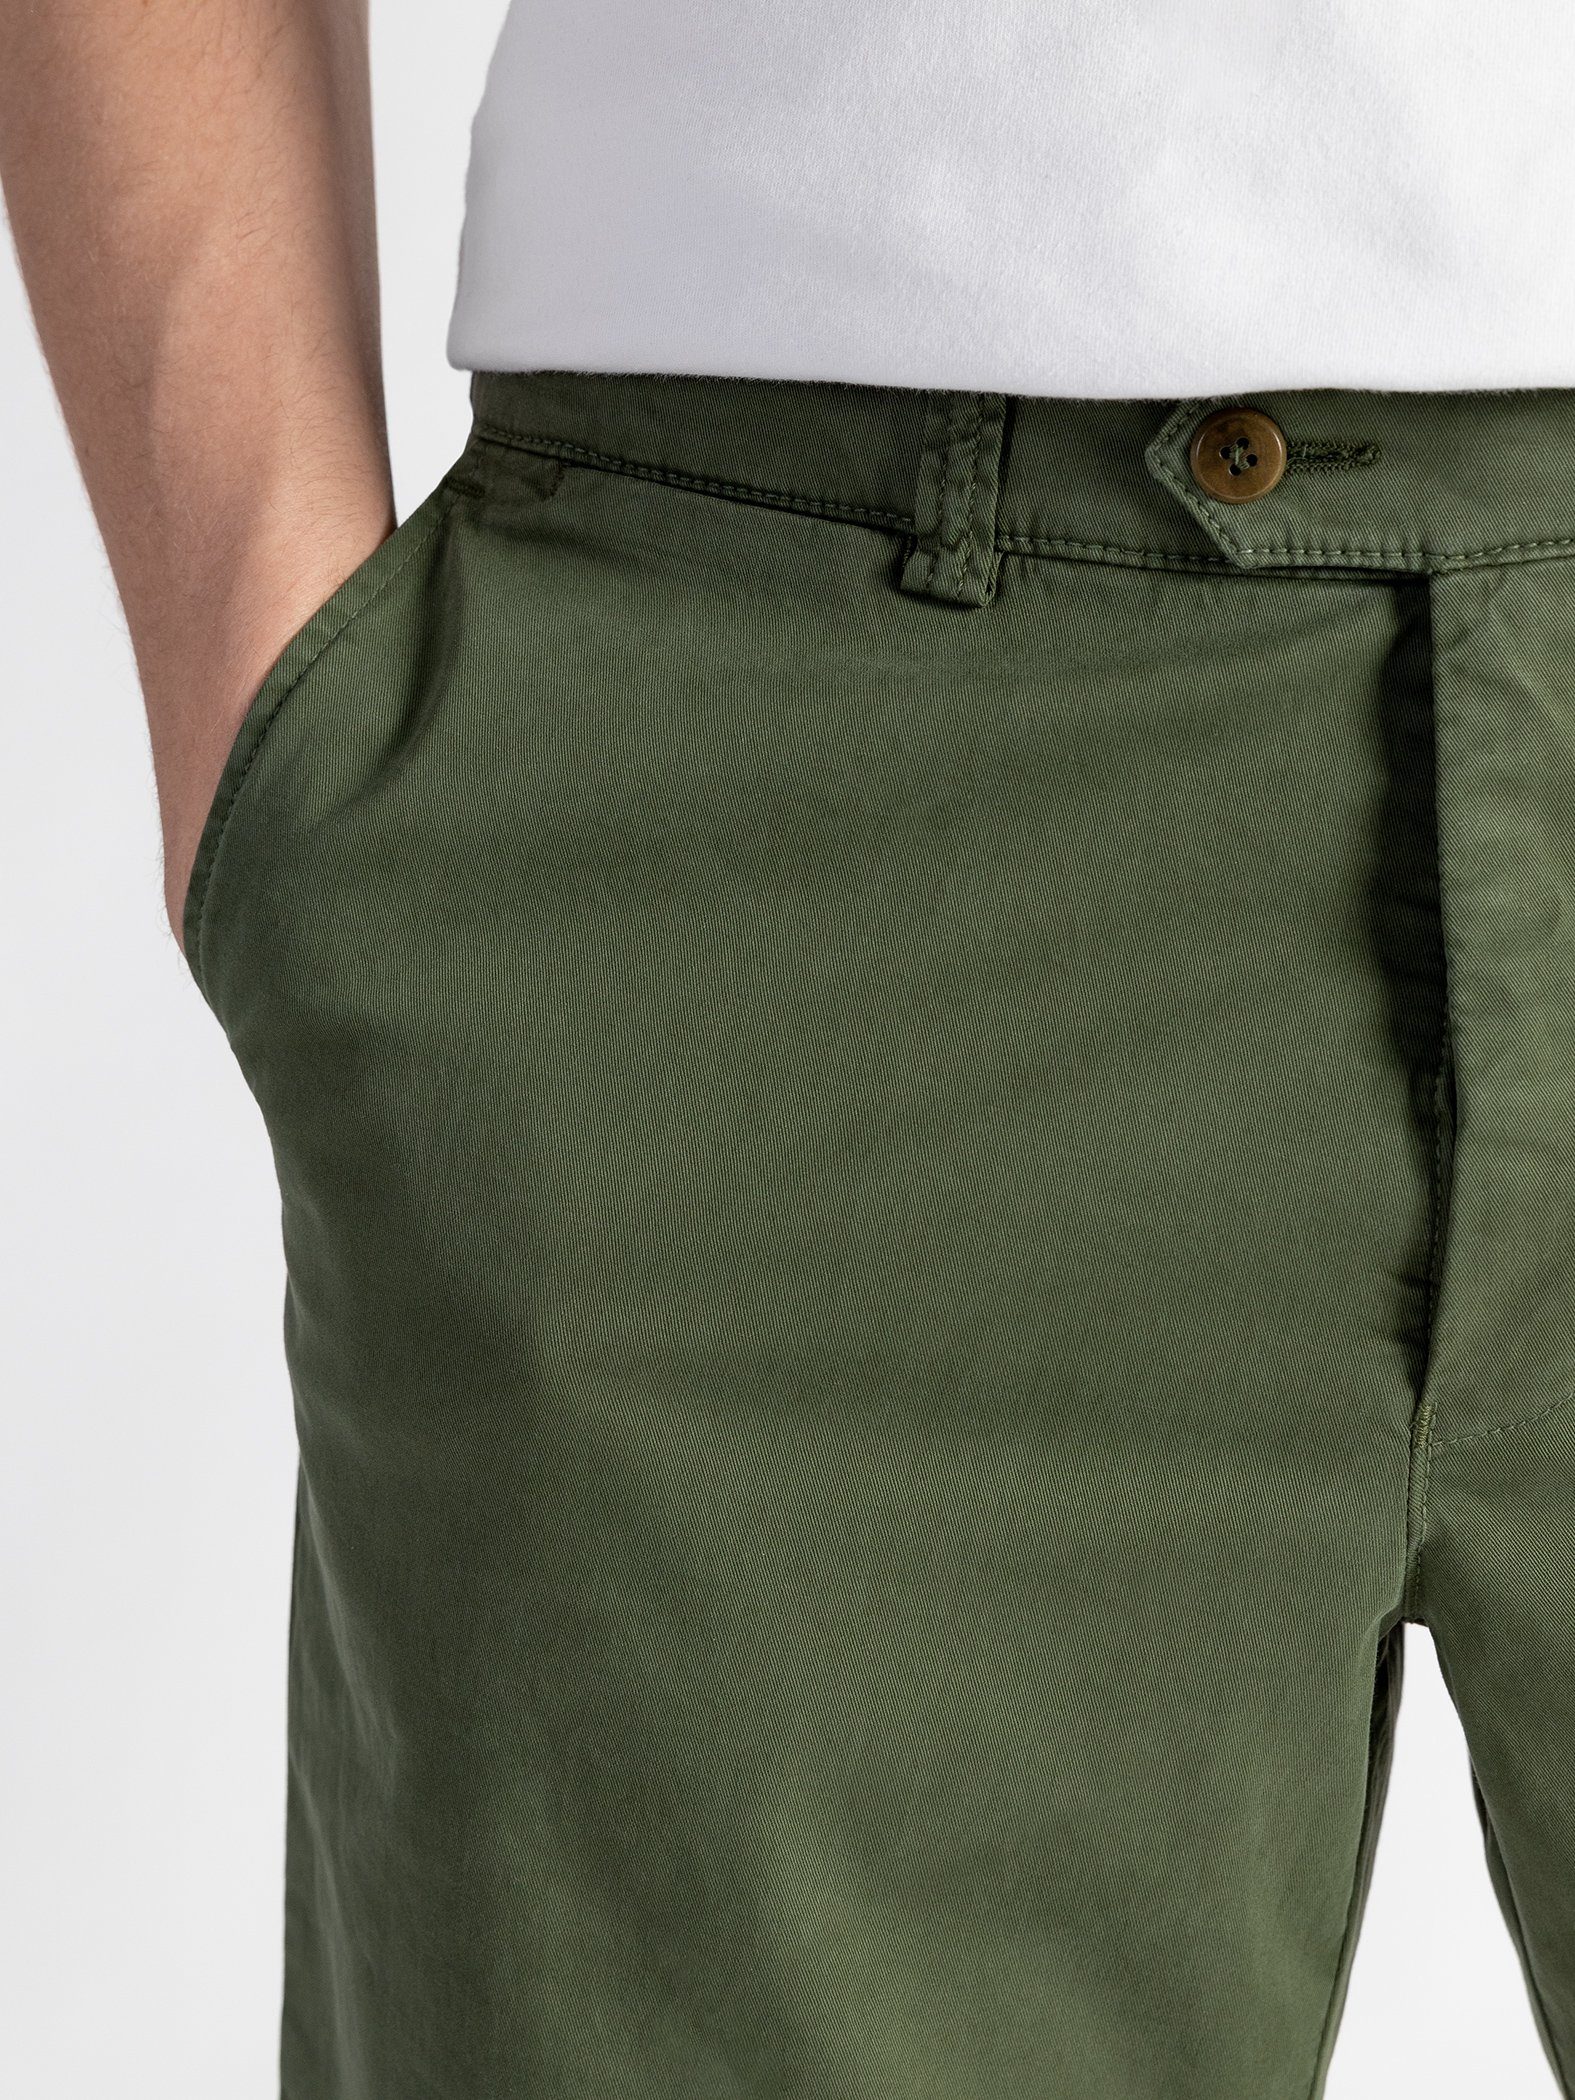 TwoMates Shorts Shorts mit Bund, Farbauswahl, elastischem Grün GOTS-zertifiziert